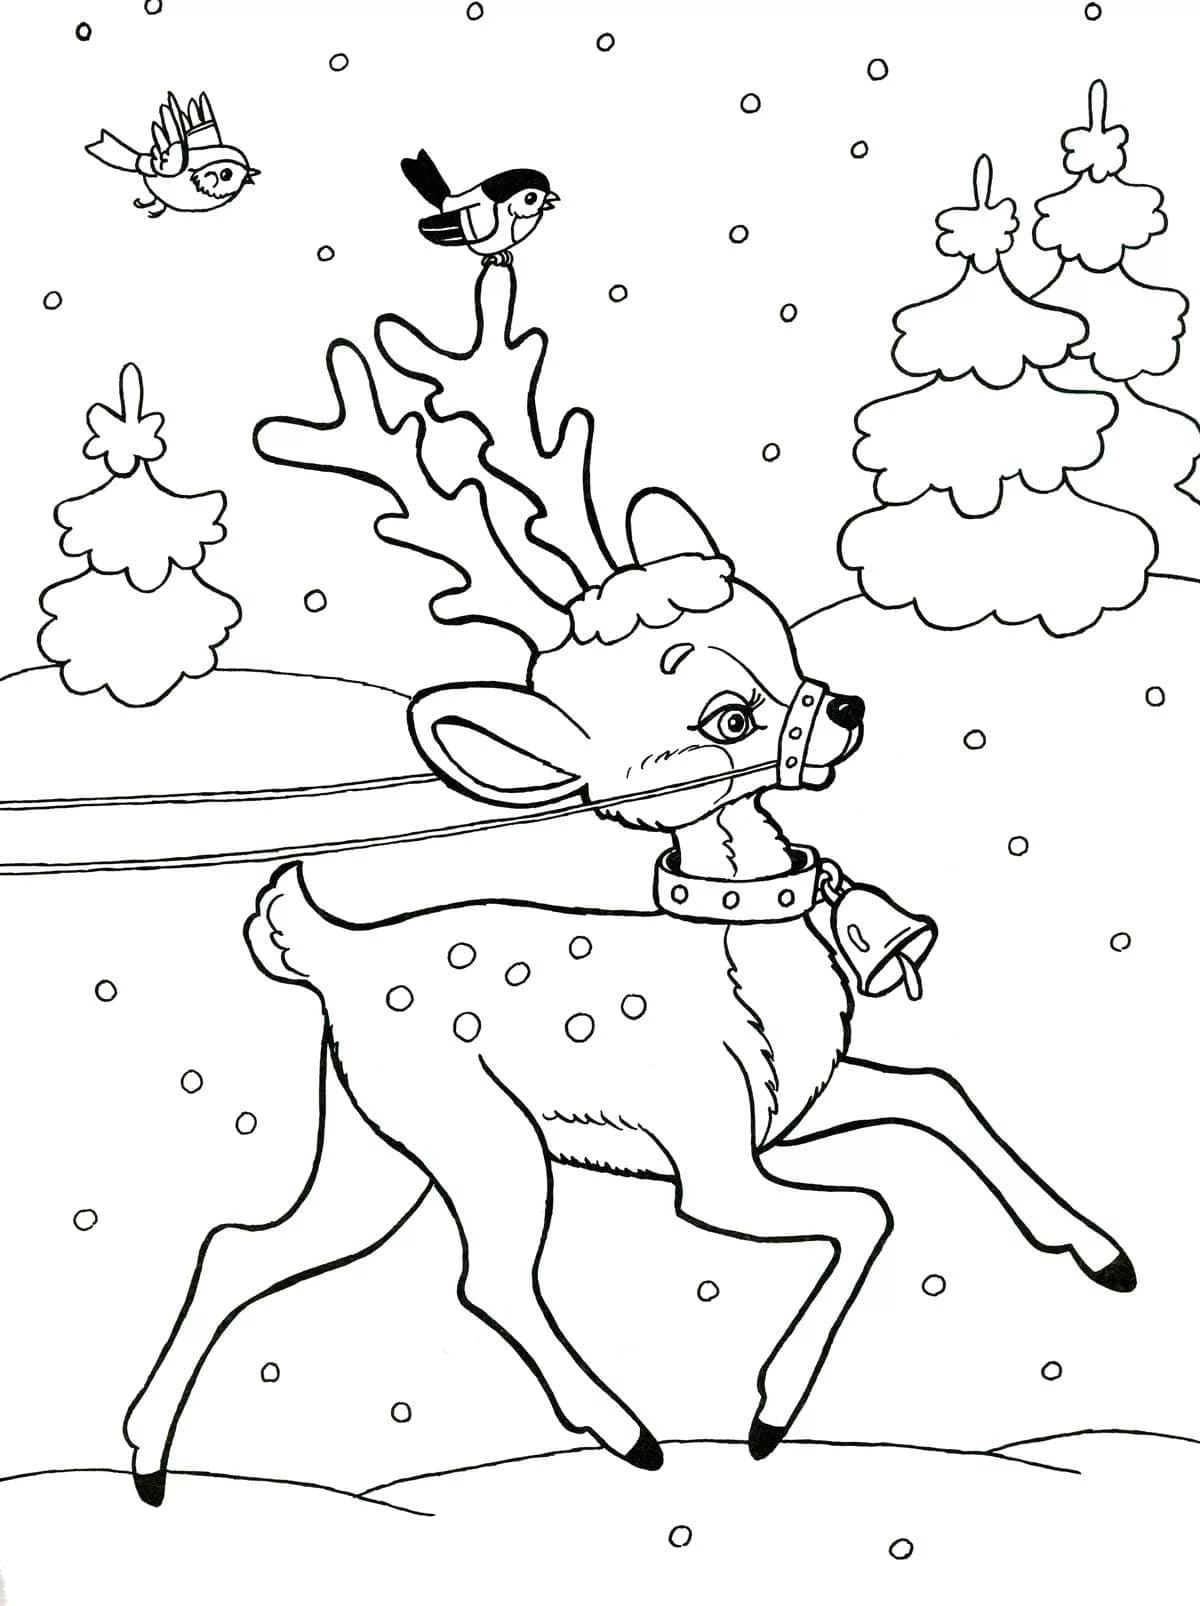 Dibujos de Renos de Navidad para colorear. Imprime gratis